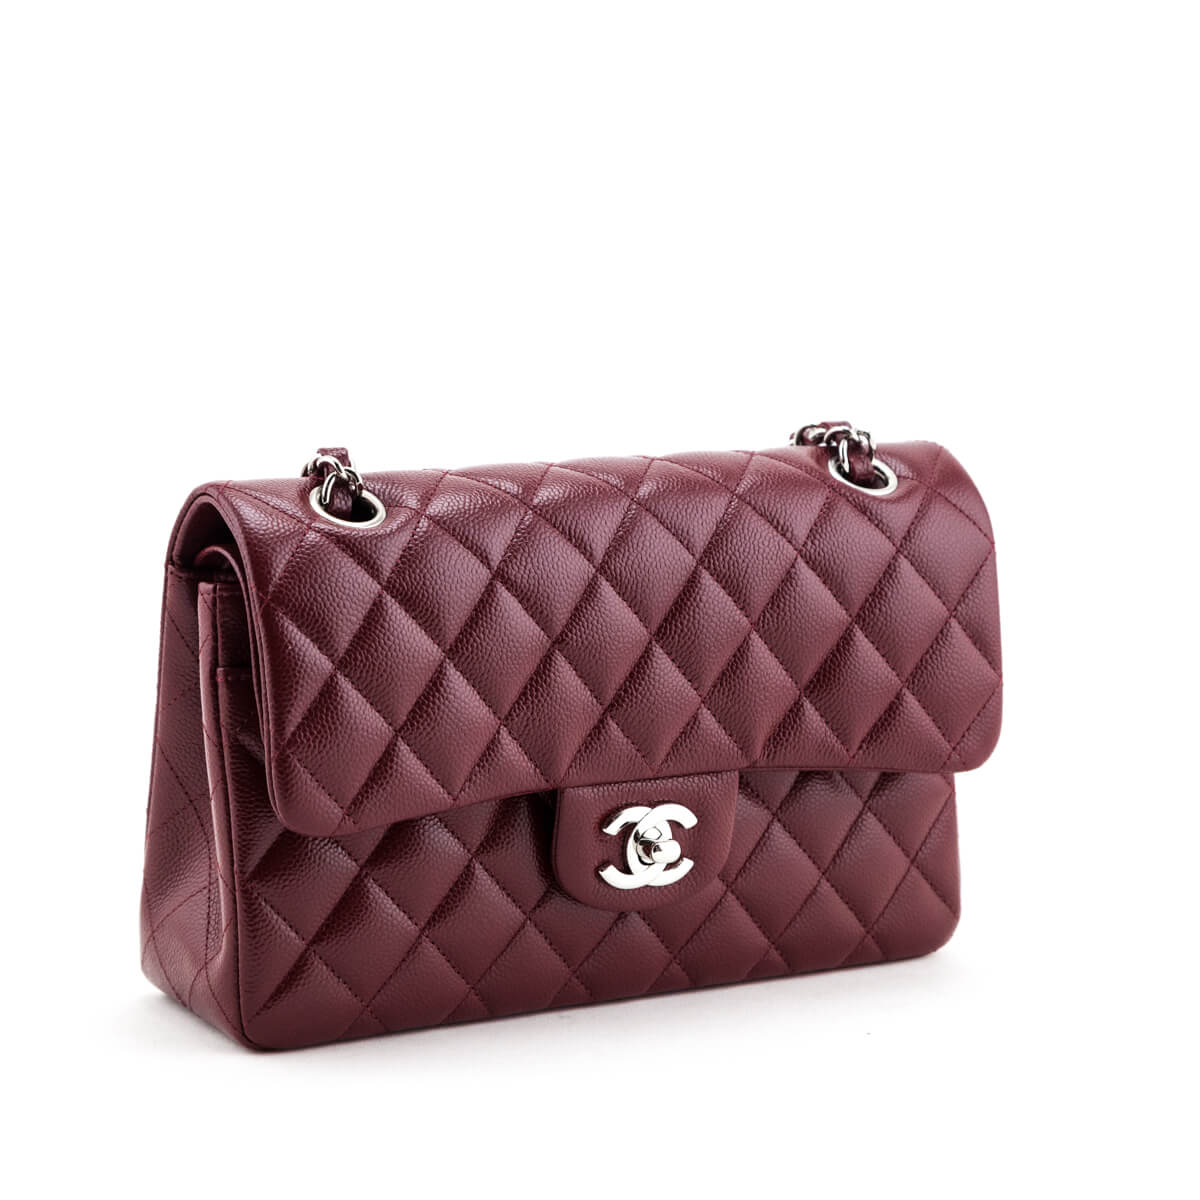 Túi xách Chanel Classic Flap Bag 1116 siêu cấp da bê màu đen size 20 cm   Túi xách cao cấp những mẫu túi siêu cấp like authentic cực đẹp